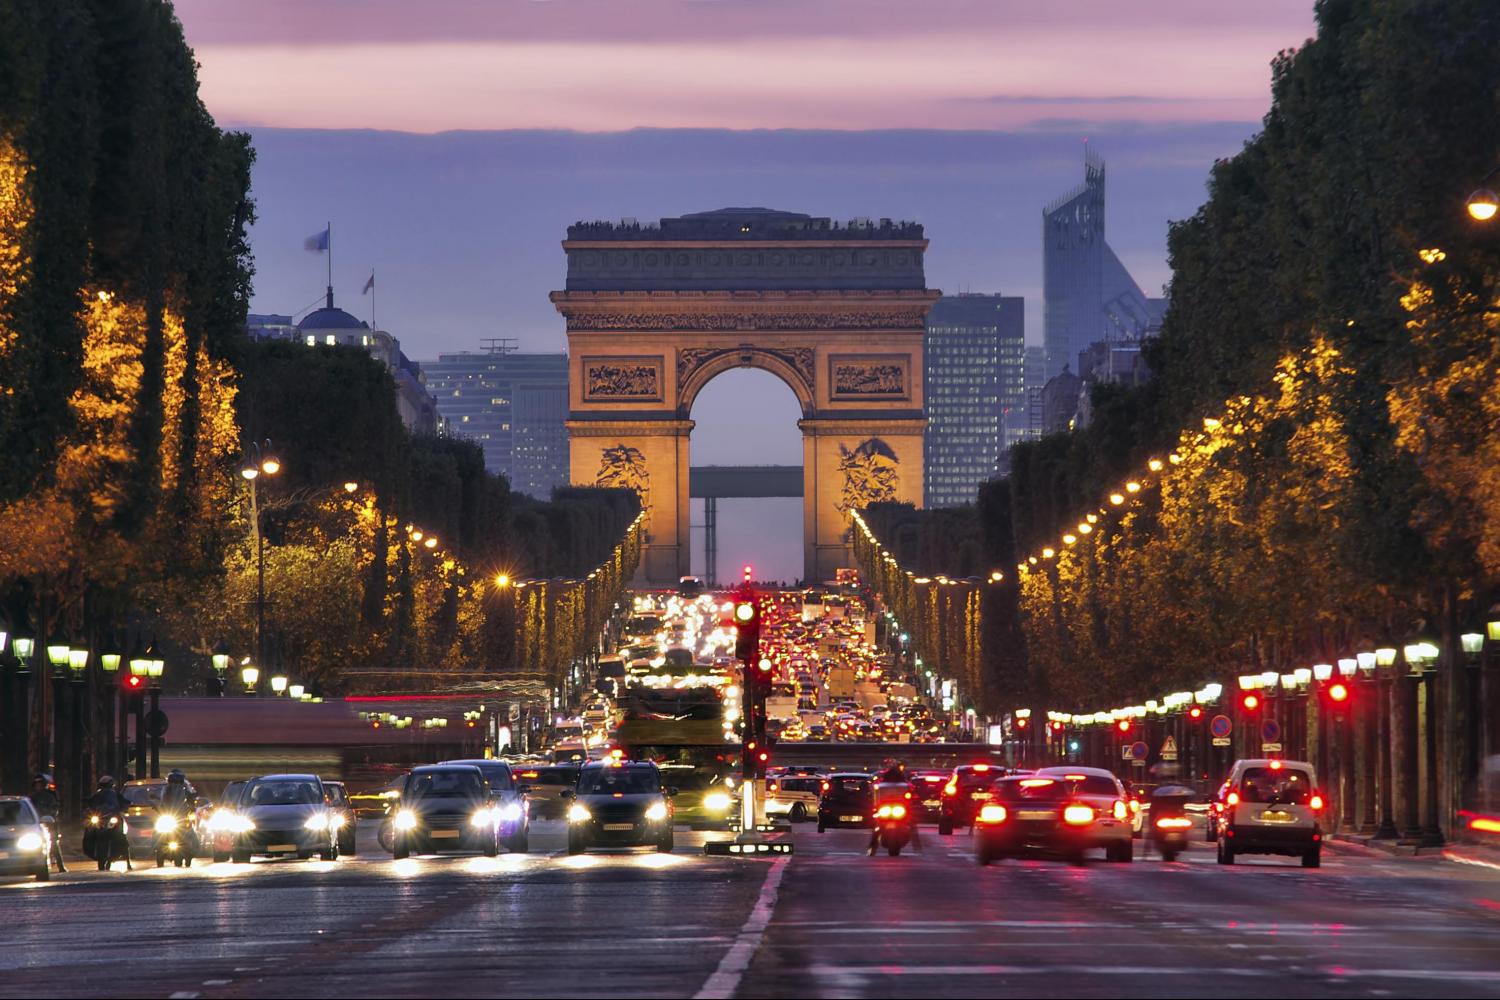 20 dicas imperdíveis para uma viagem a Paris - Champs Elysees